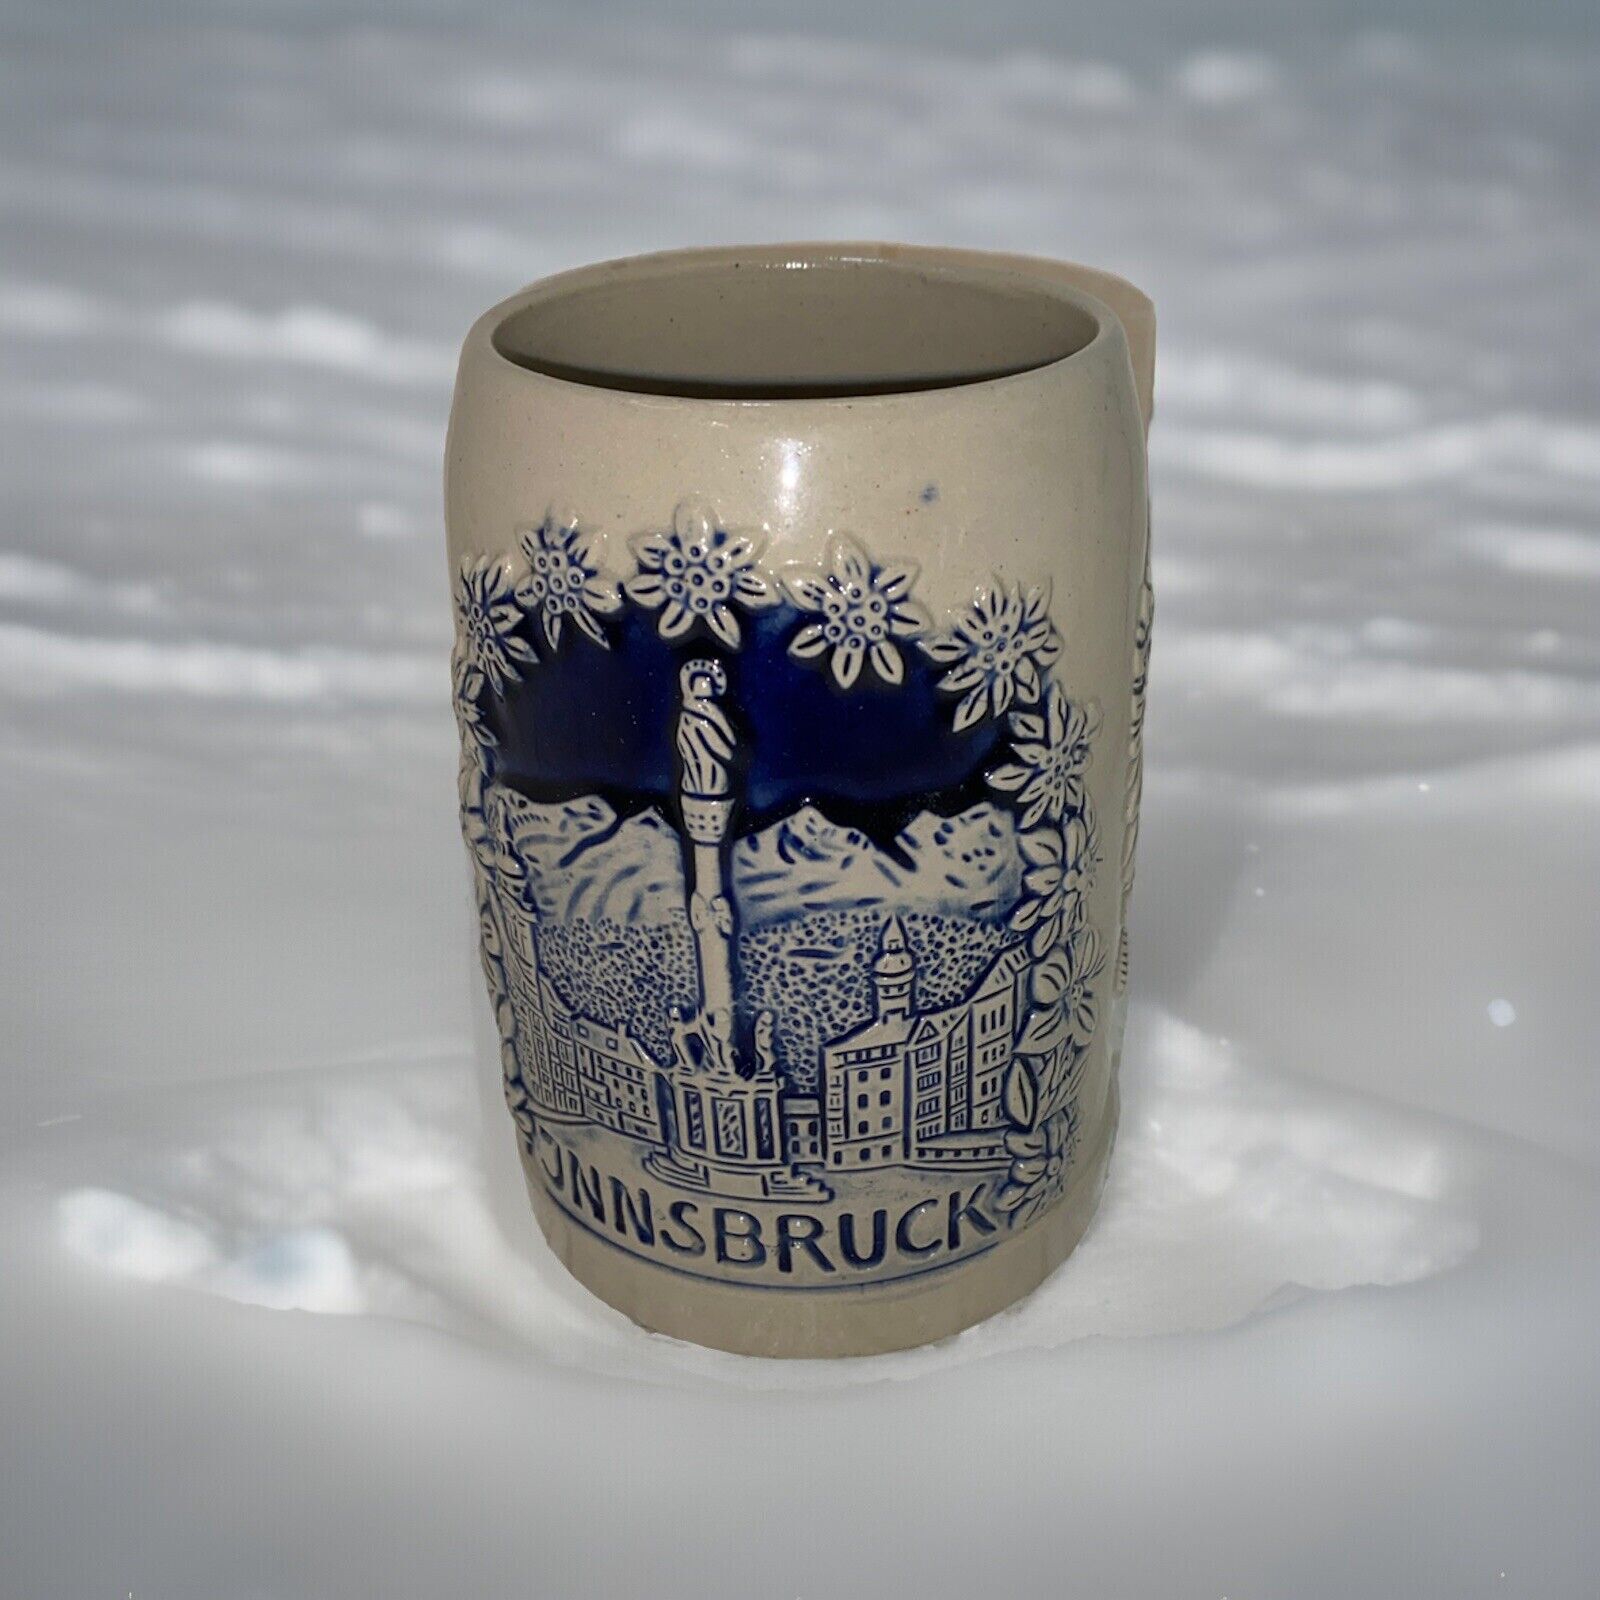 Vintage Austrian Beer Mug Stein Innsbruck Osterreich Tirol All Handmade By King